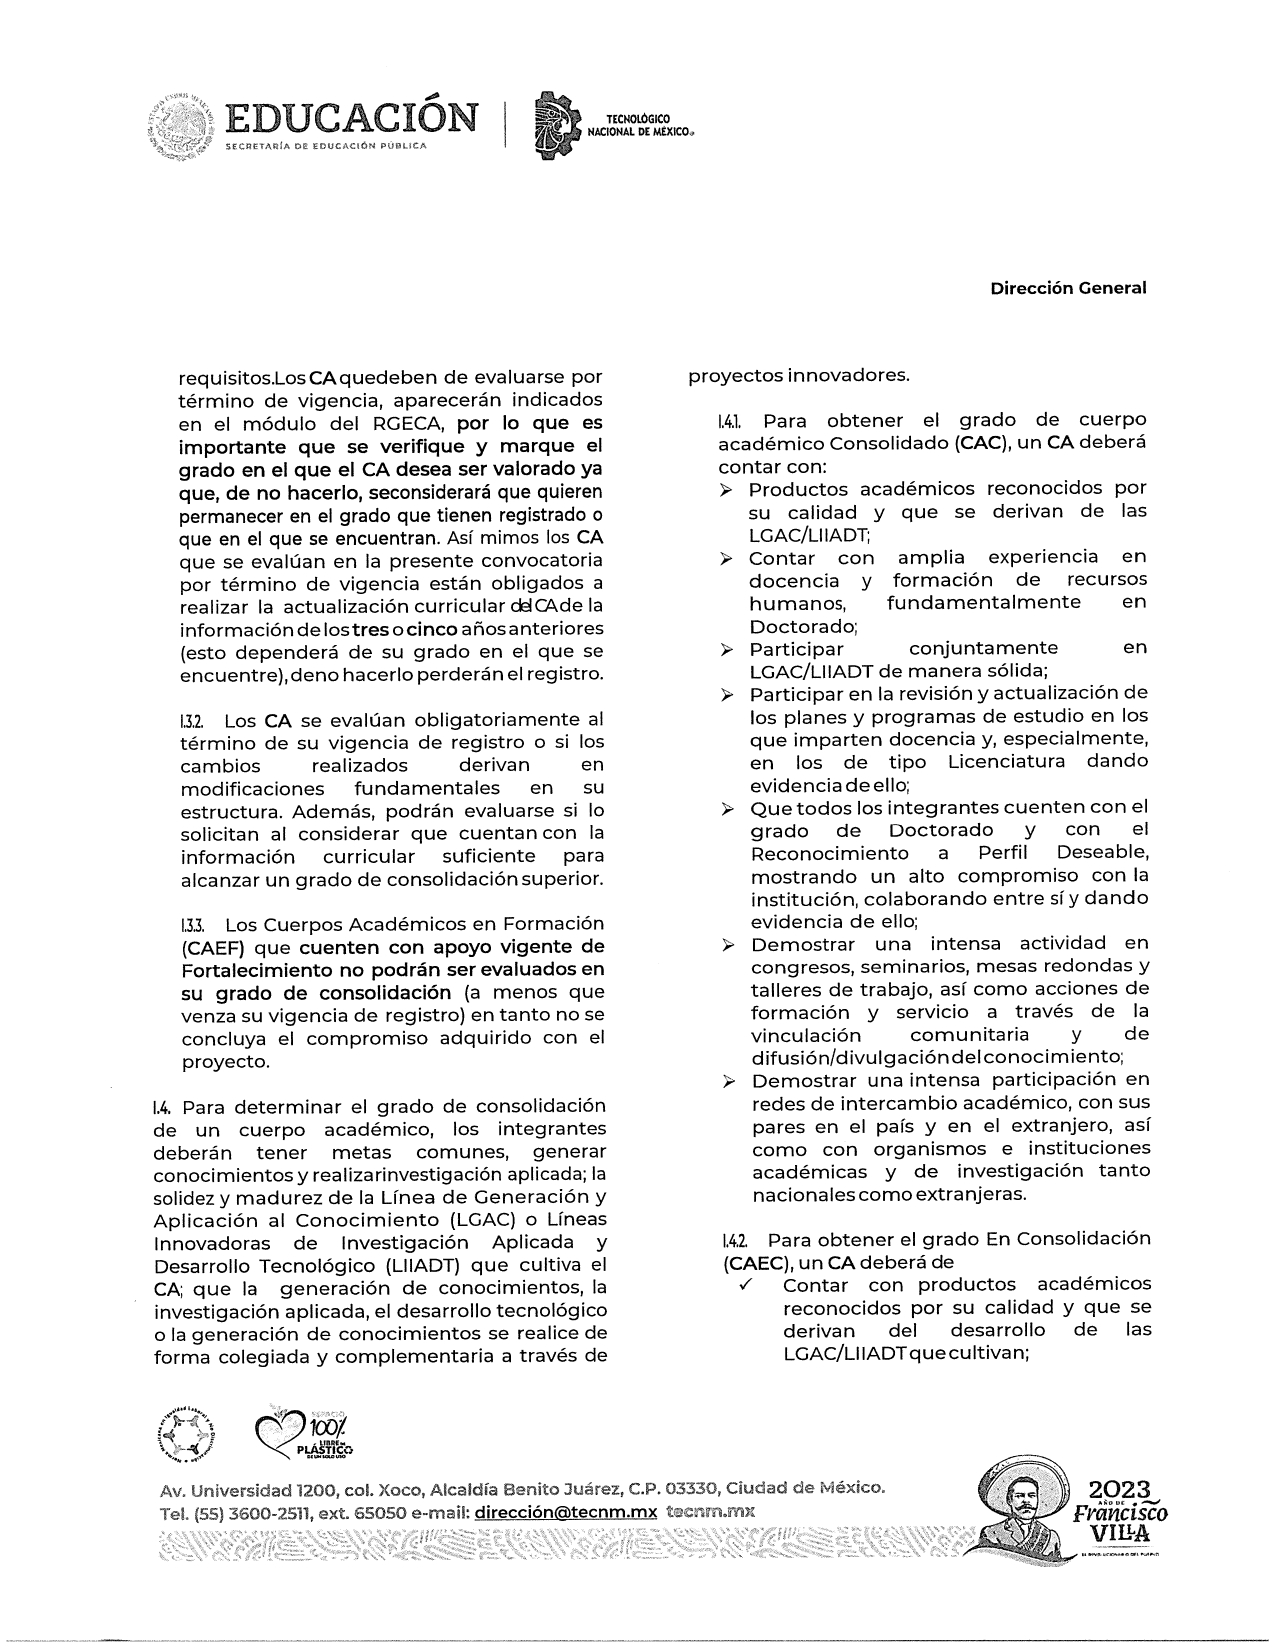 Registro_y_Evaluación_de_Cuerpos_Académicos_2023_page-0003.jpg